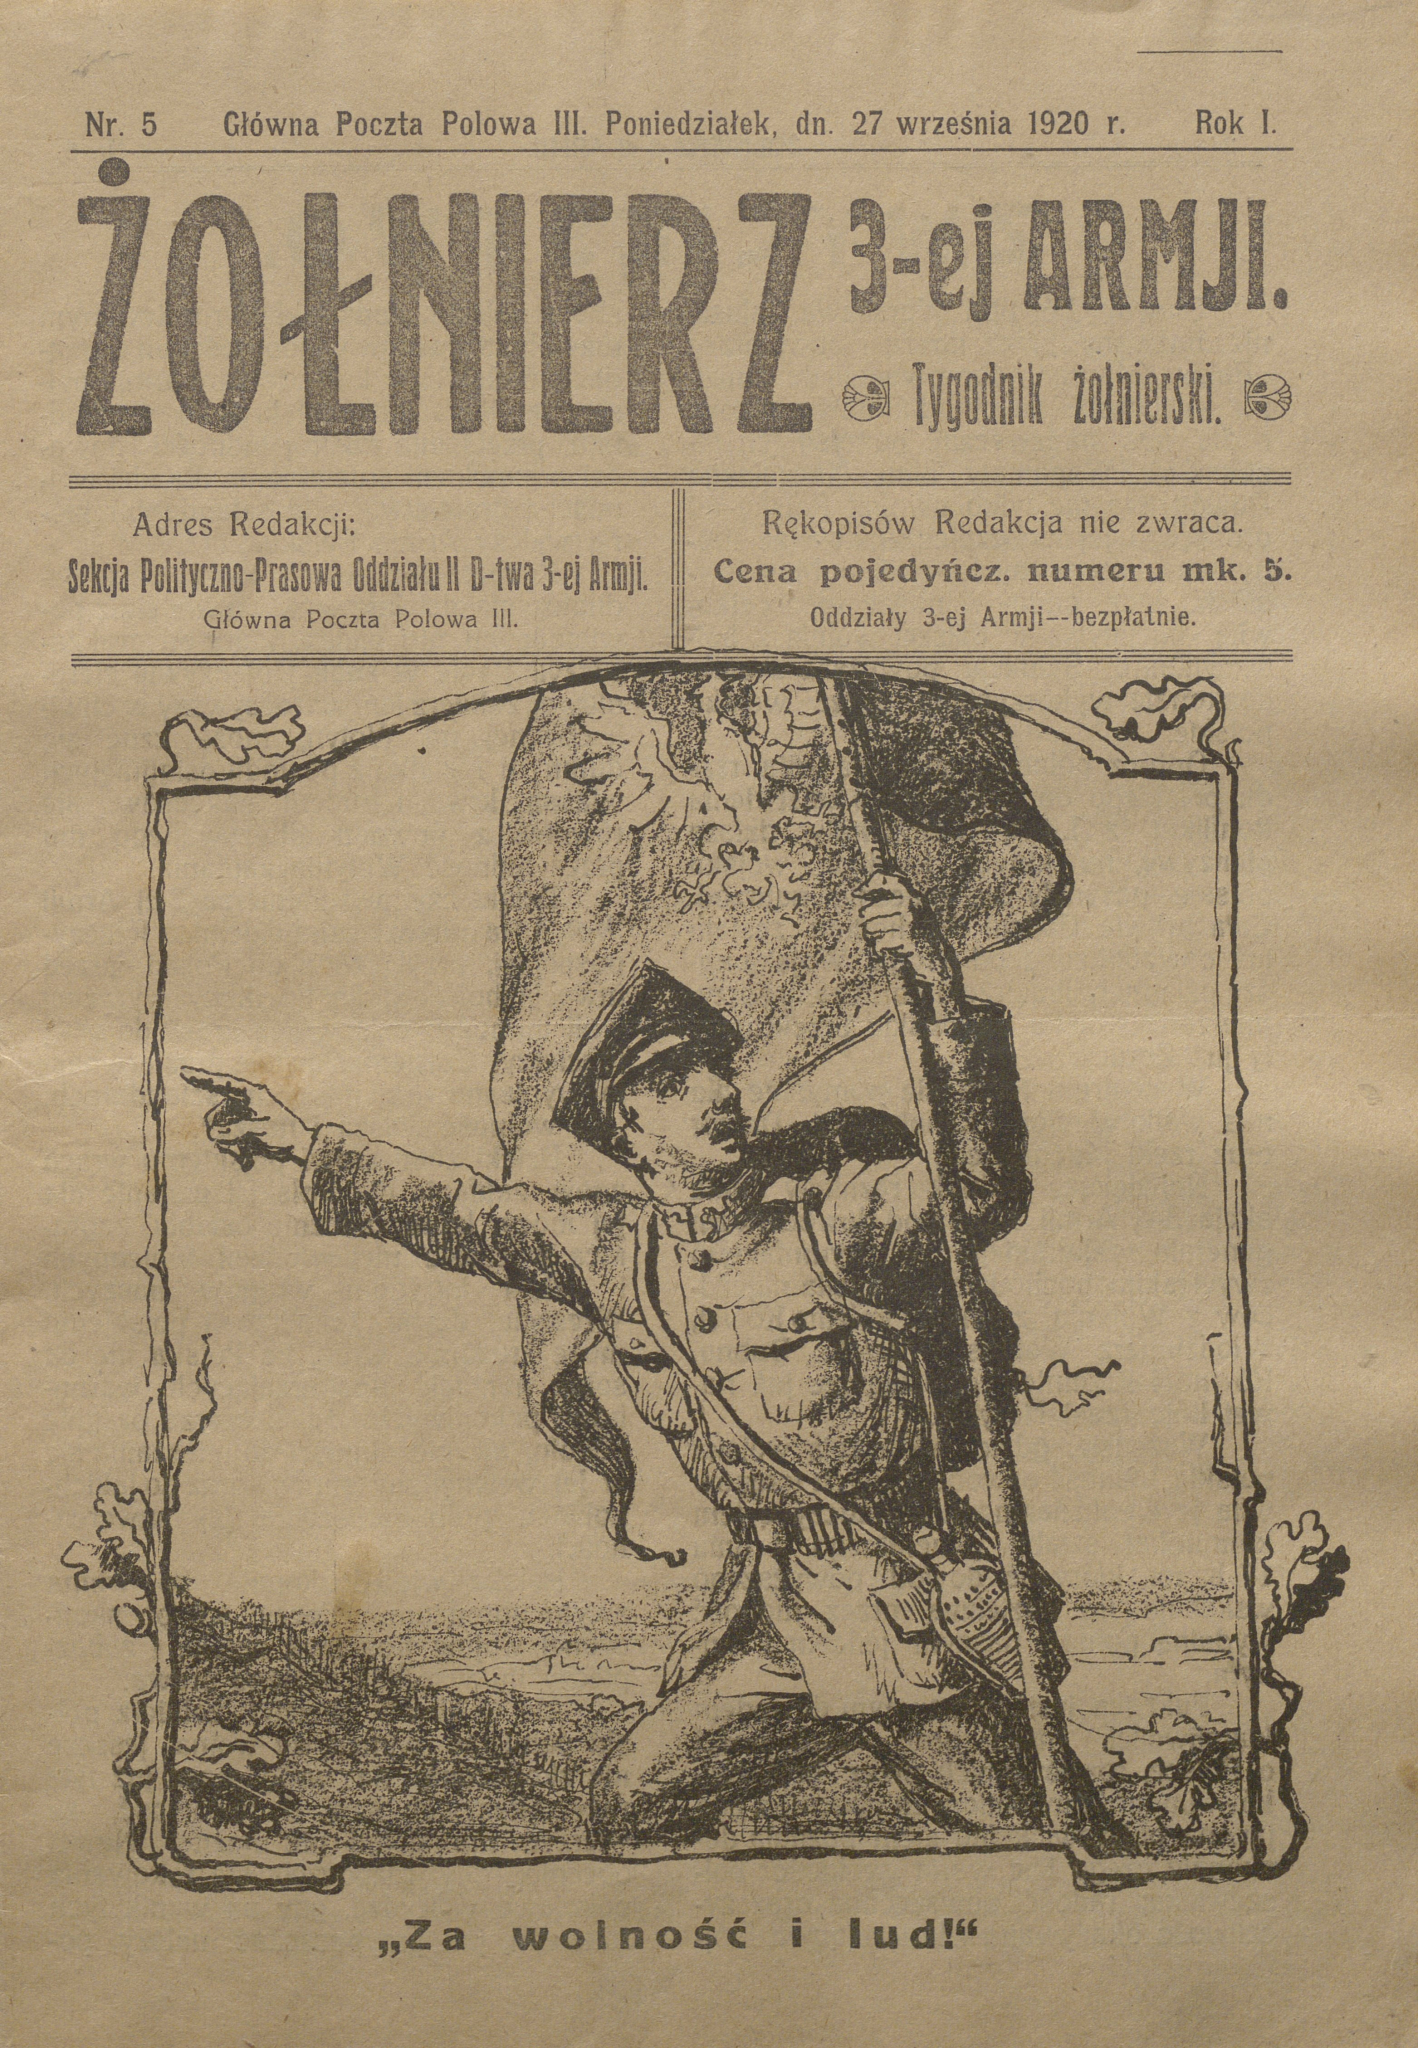 Tygodnik frontowy „Żołnierz 3-ej Armji” z 27 września 1920 r. Źródło: Biblioteka Narodowa